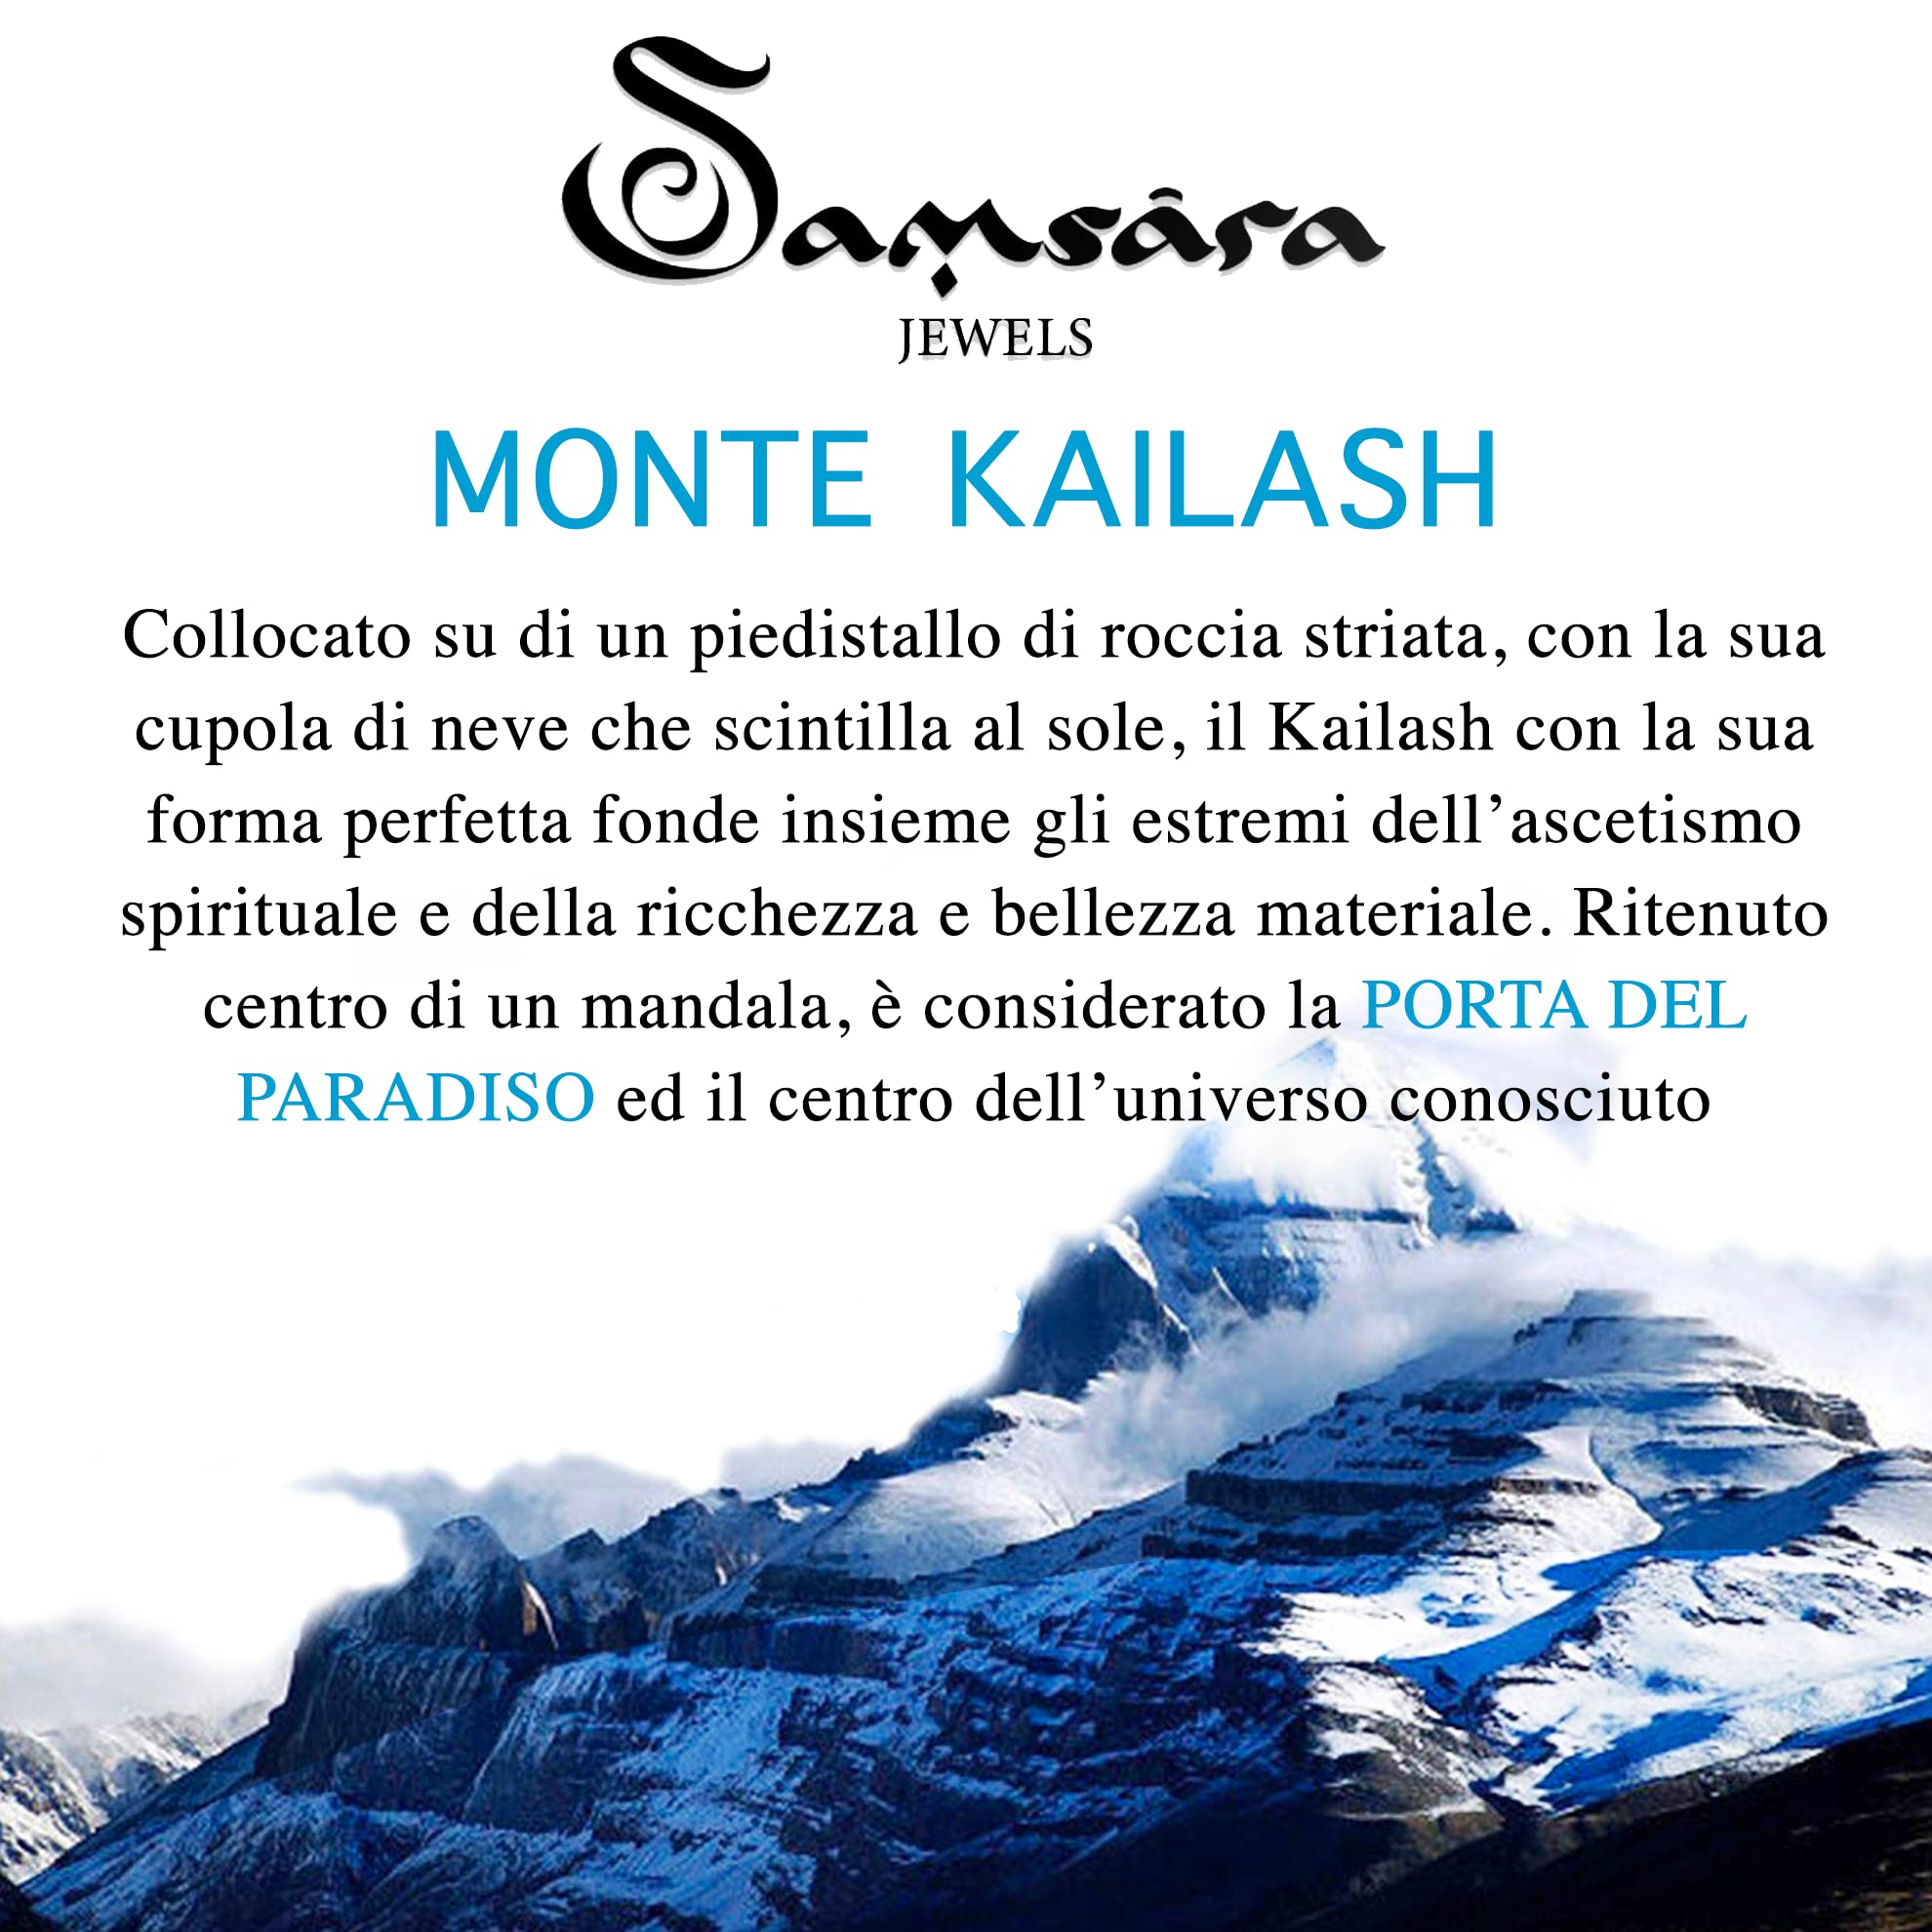 Samsara Bracciale Kailash Tibetano Buddista - Bracciale Spirituale Con Pietra del K2 - Filo in cotone cerato Bianco